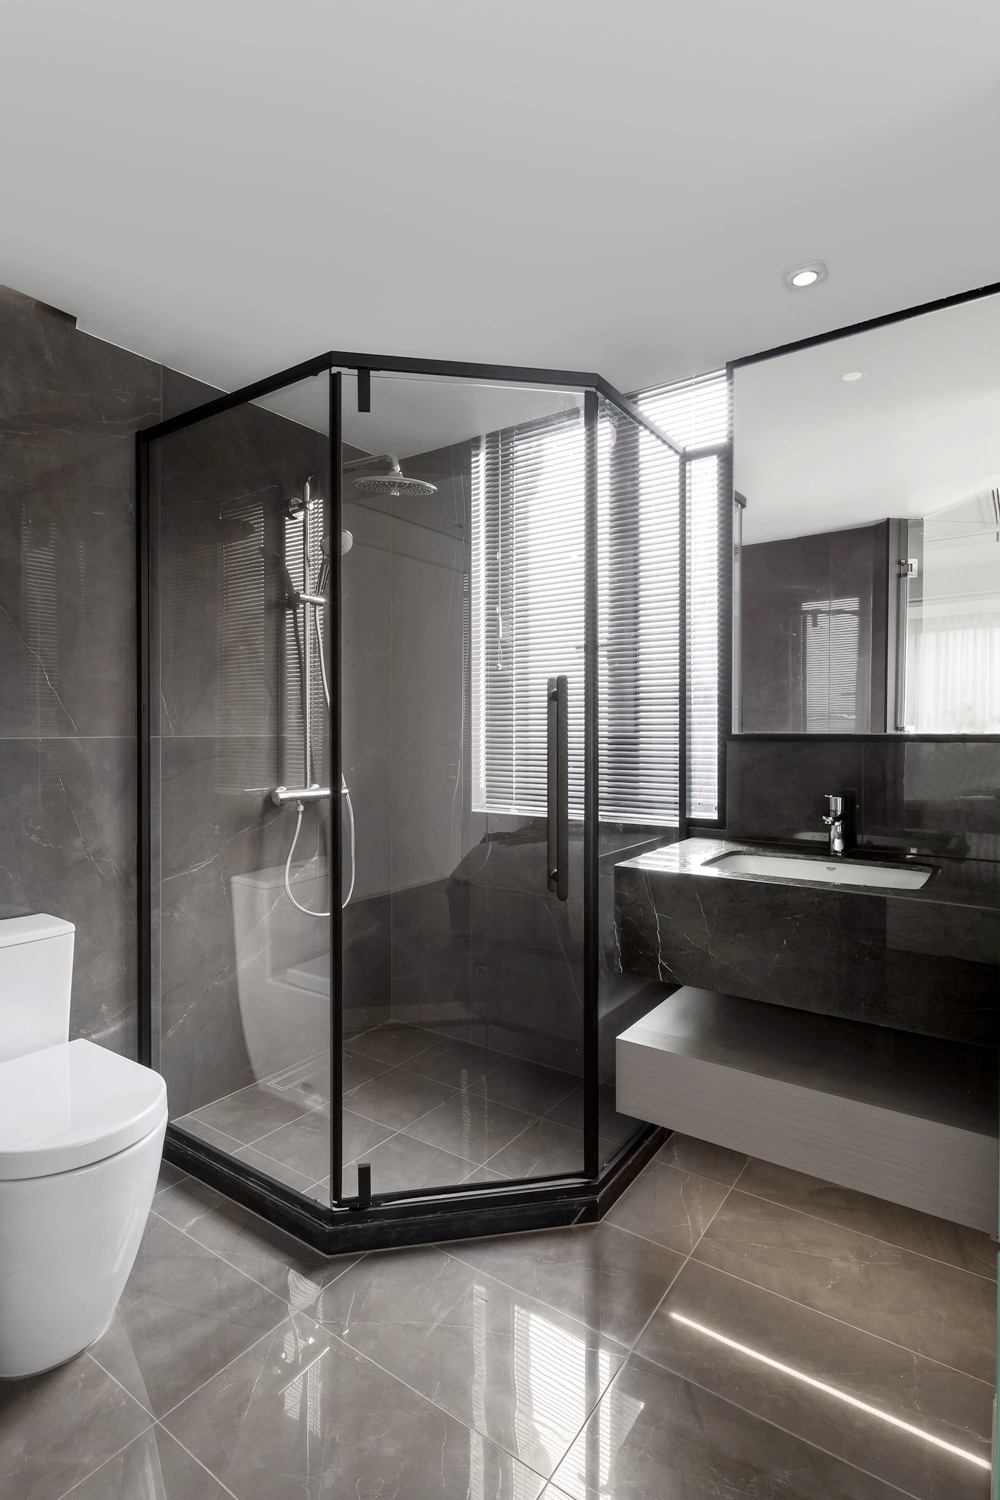 卫浴间在细节的处理和材料的使用上都非常细腻精致，整体品质感很强。